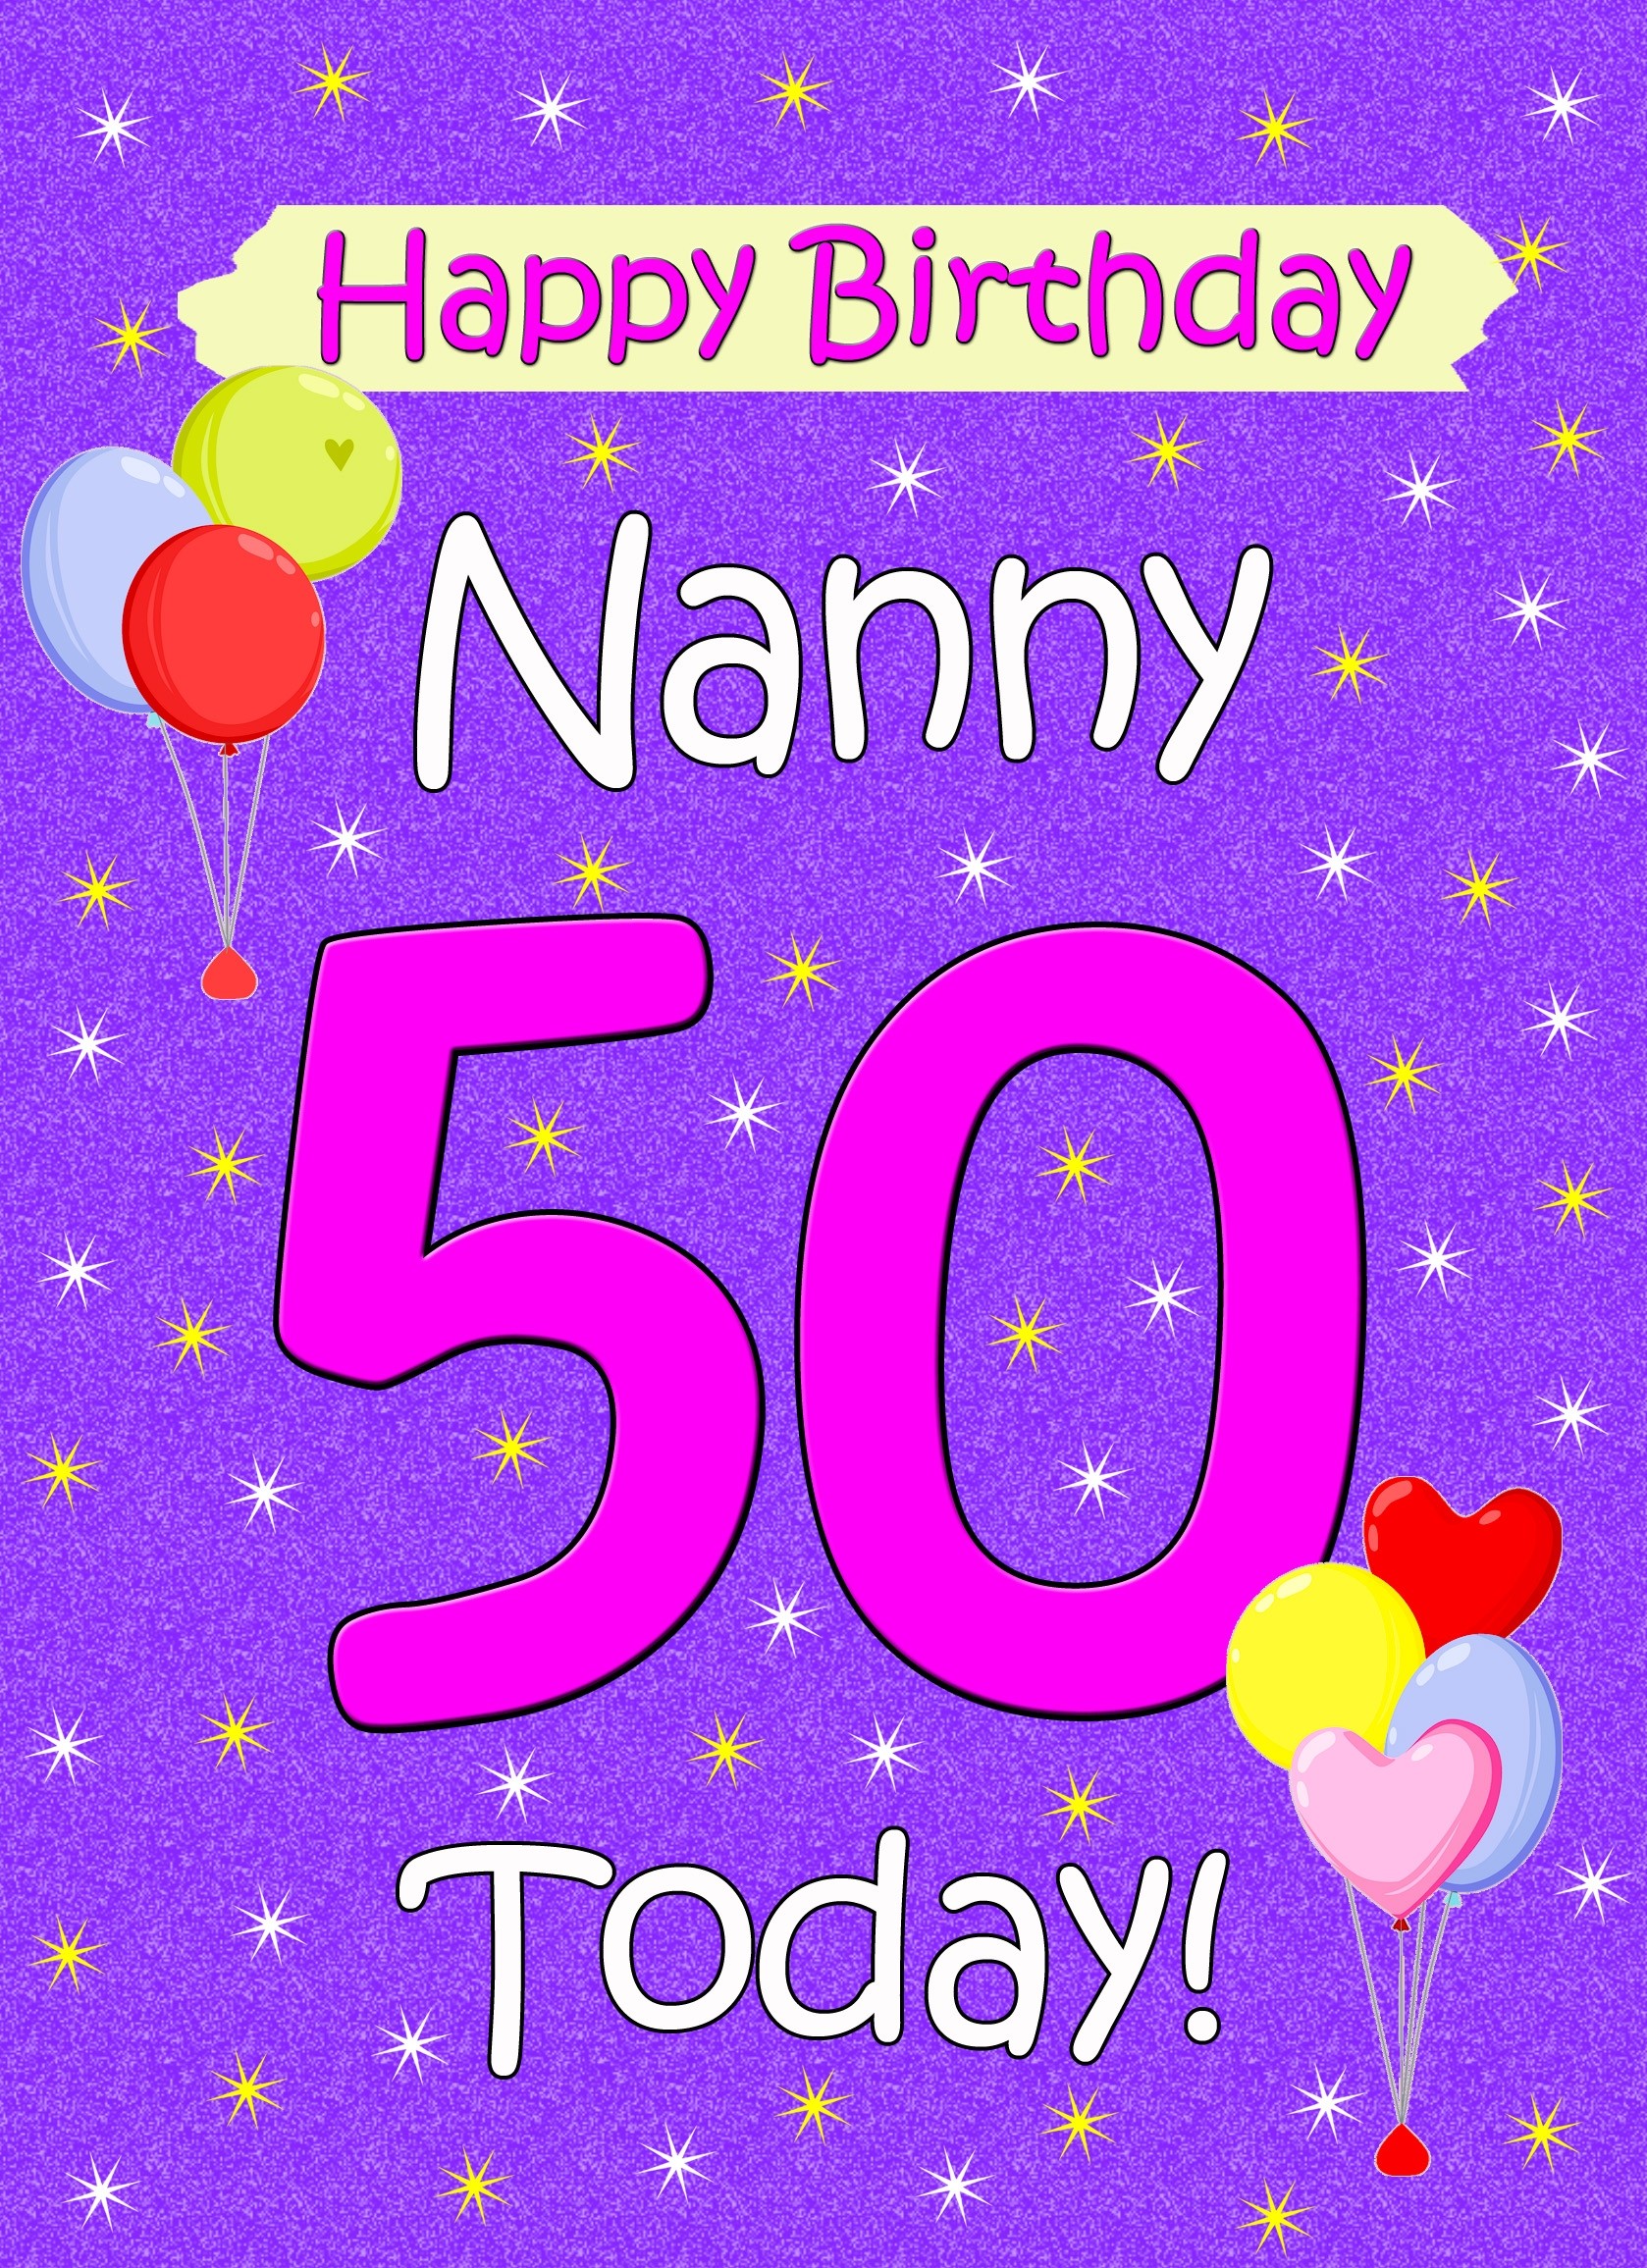 Nanny 50th Birthday Card (Lilac)